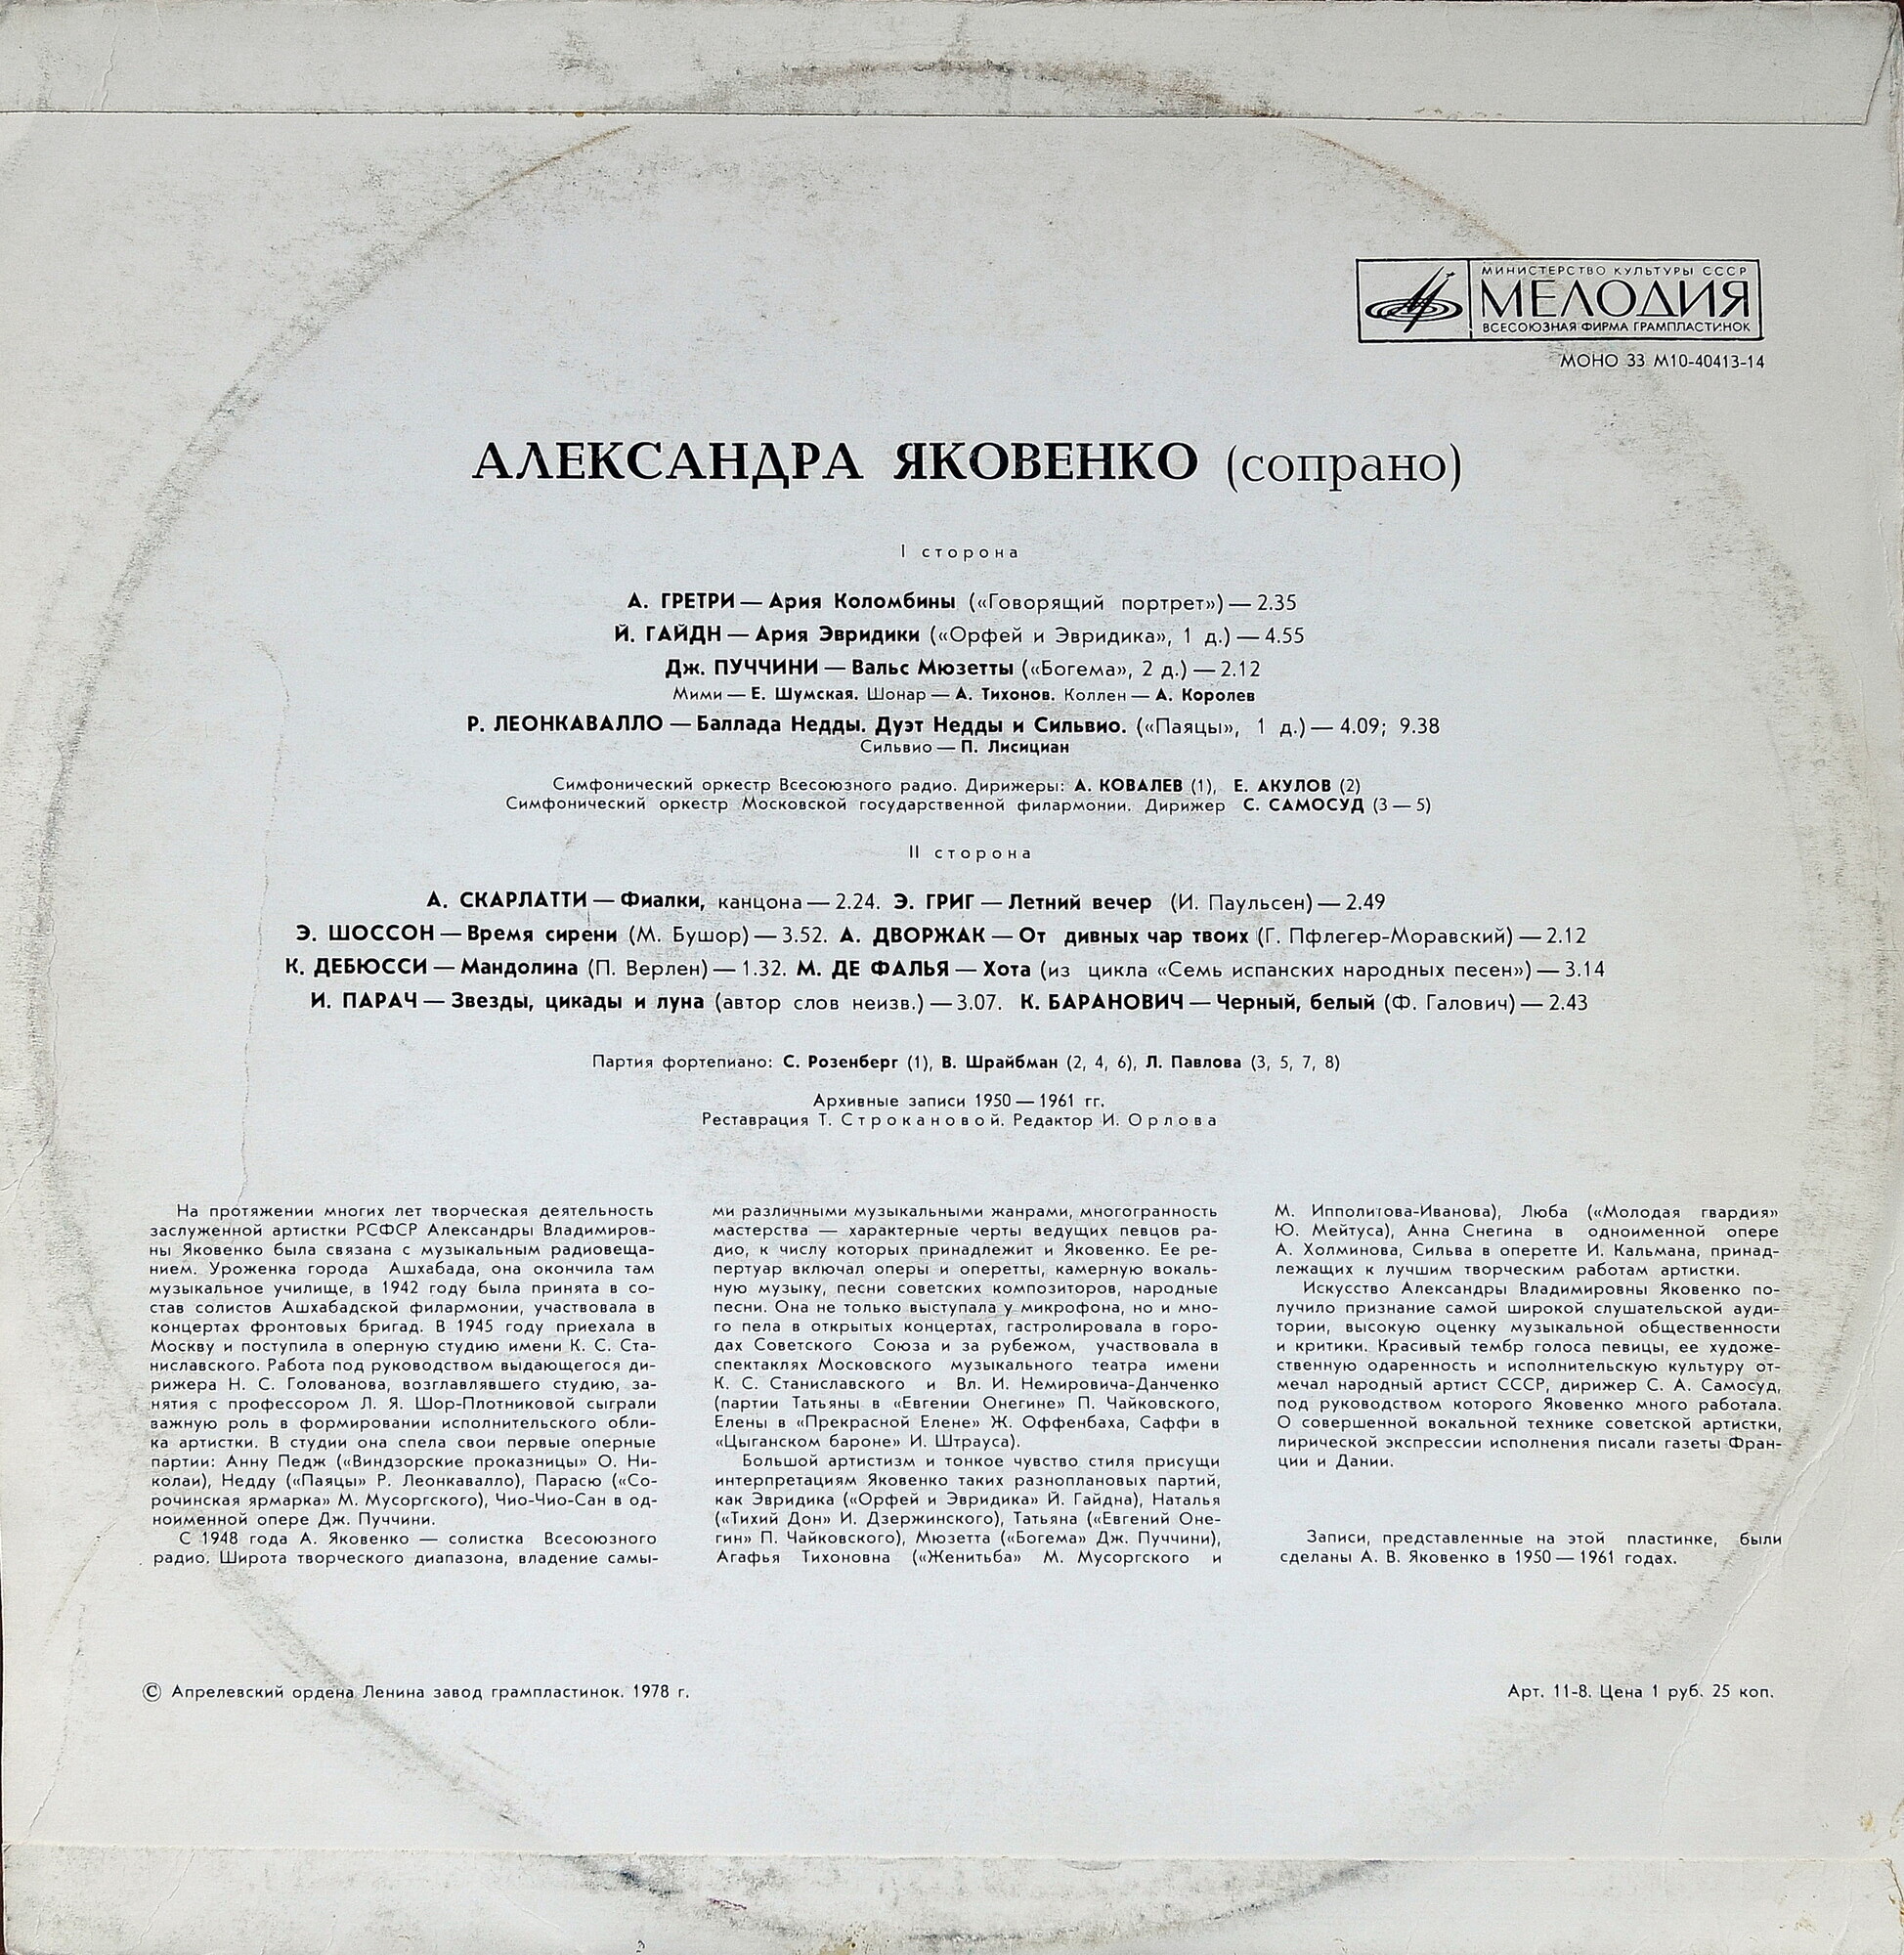 ЯКОВЕНКО Александра (сопрано) - архивные записи 1950-1961 гг.